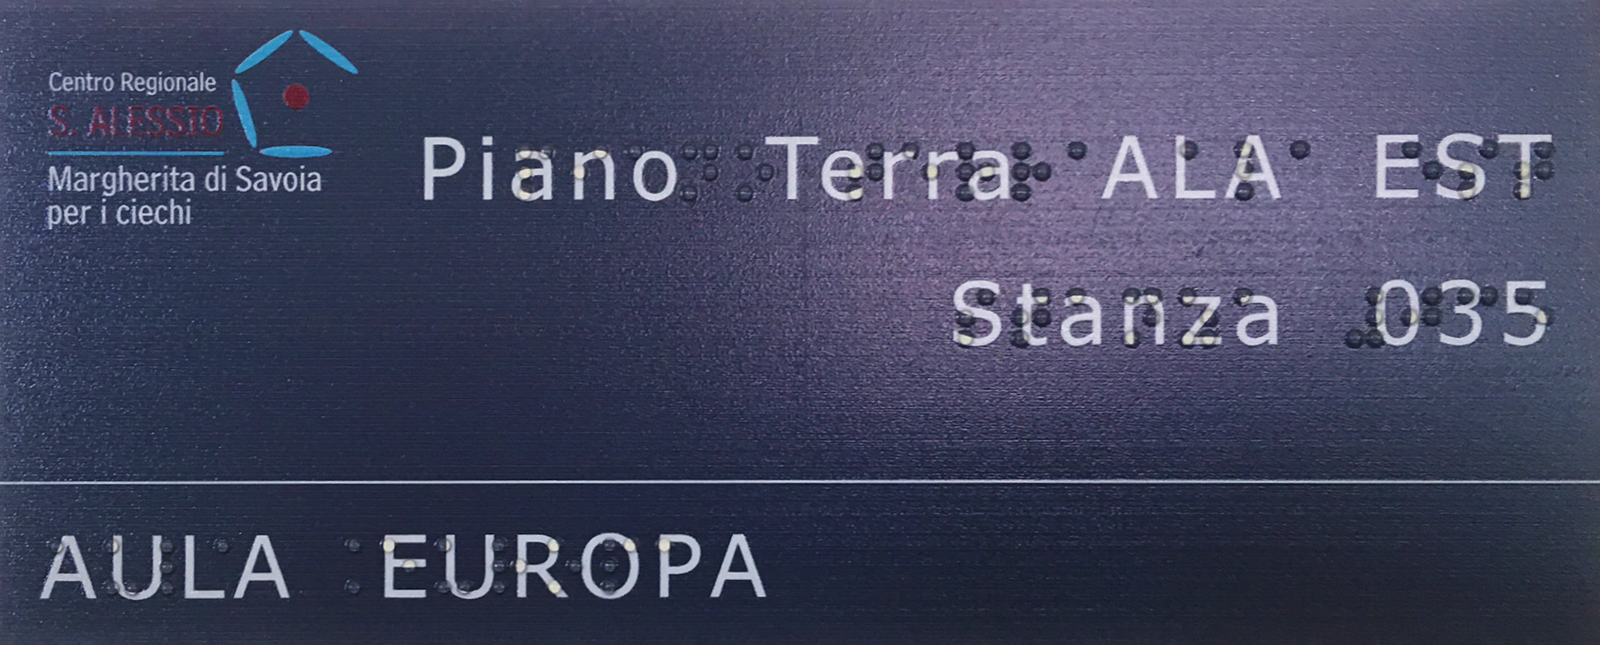 Targhe Braille di indicazione - Centro Regionale S. Alessio per ciechi - Roma